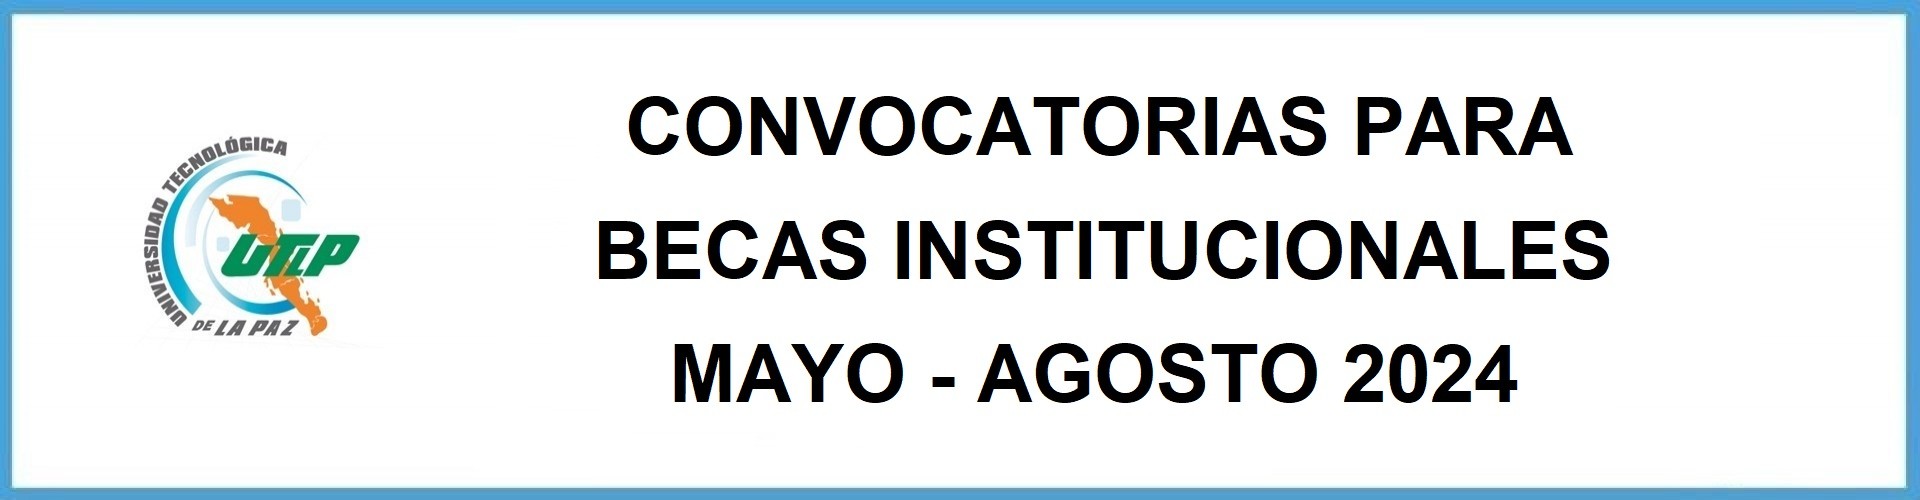 Convocatorias para Becas institucionales Mayo - Agosto 2024